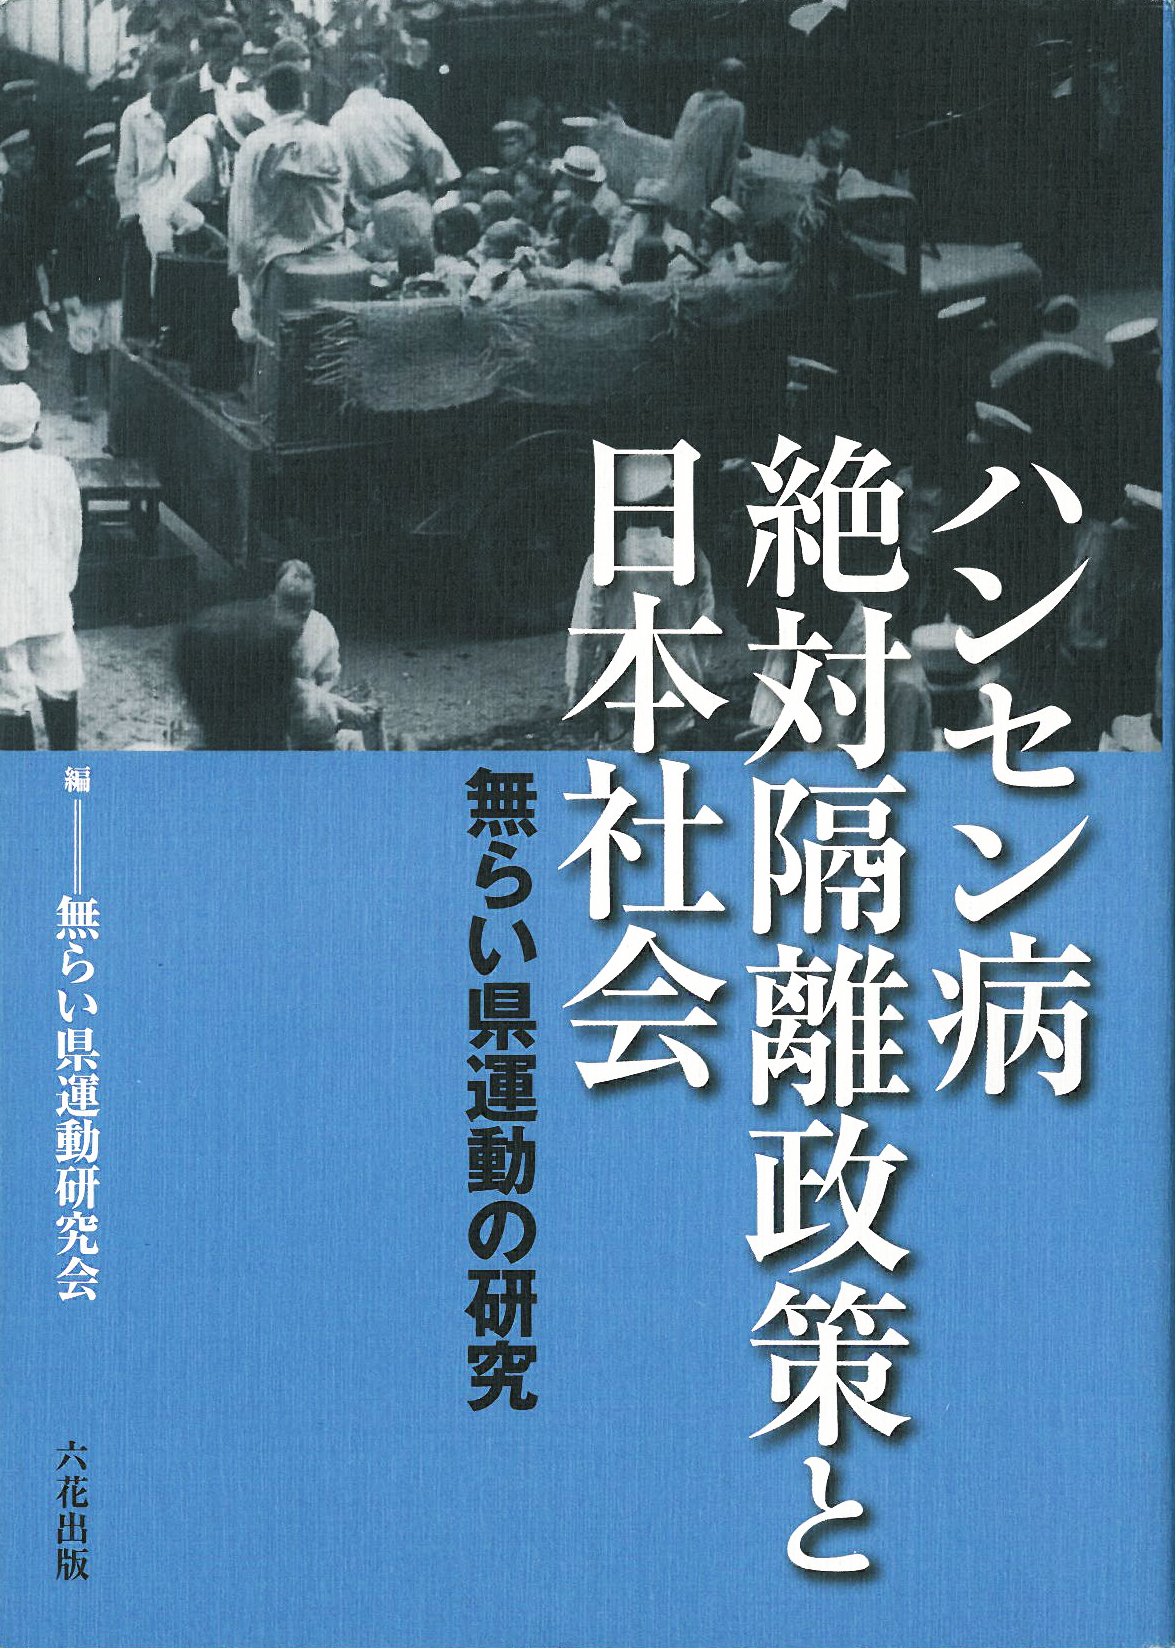 ハンセン病絶対隔離政策と日本社会 (無らい県運動の研究)